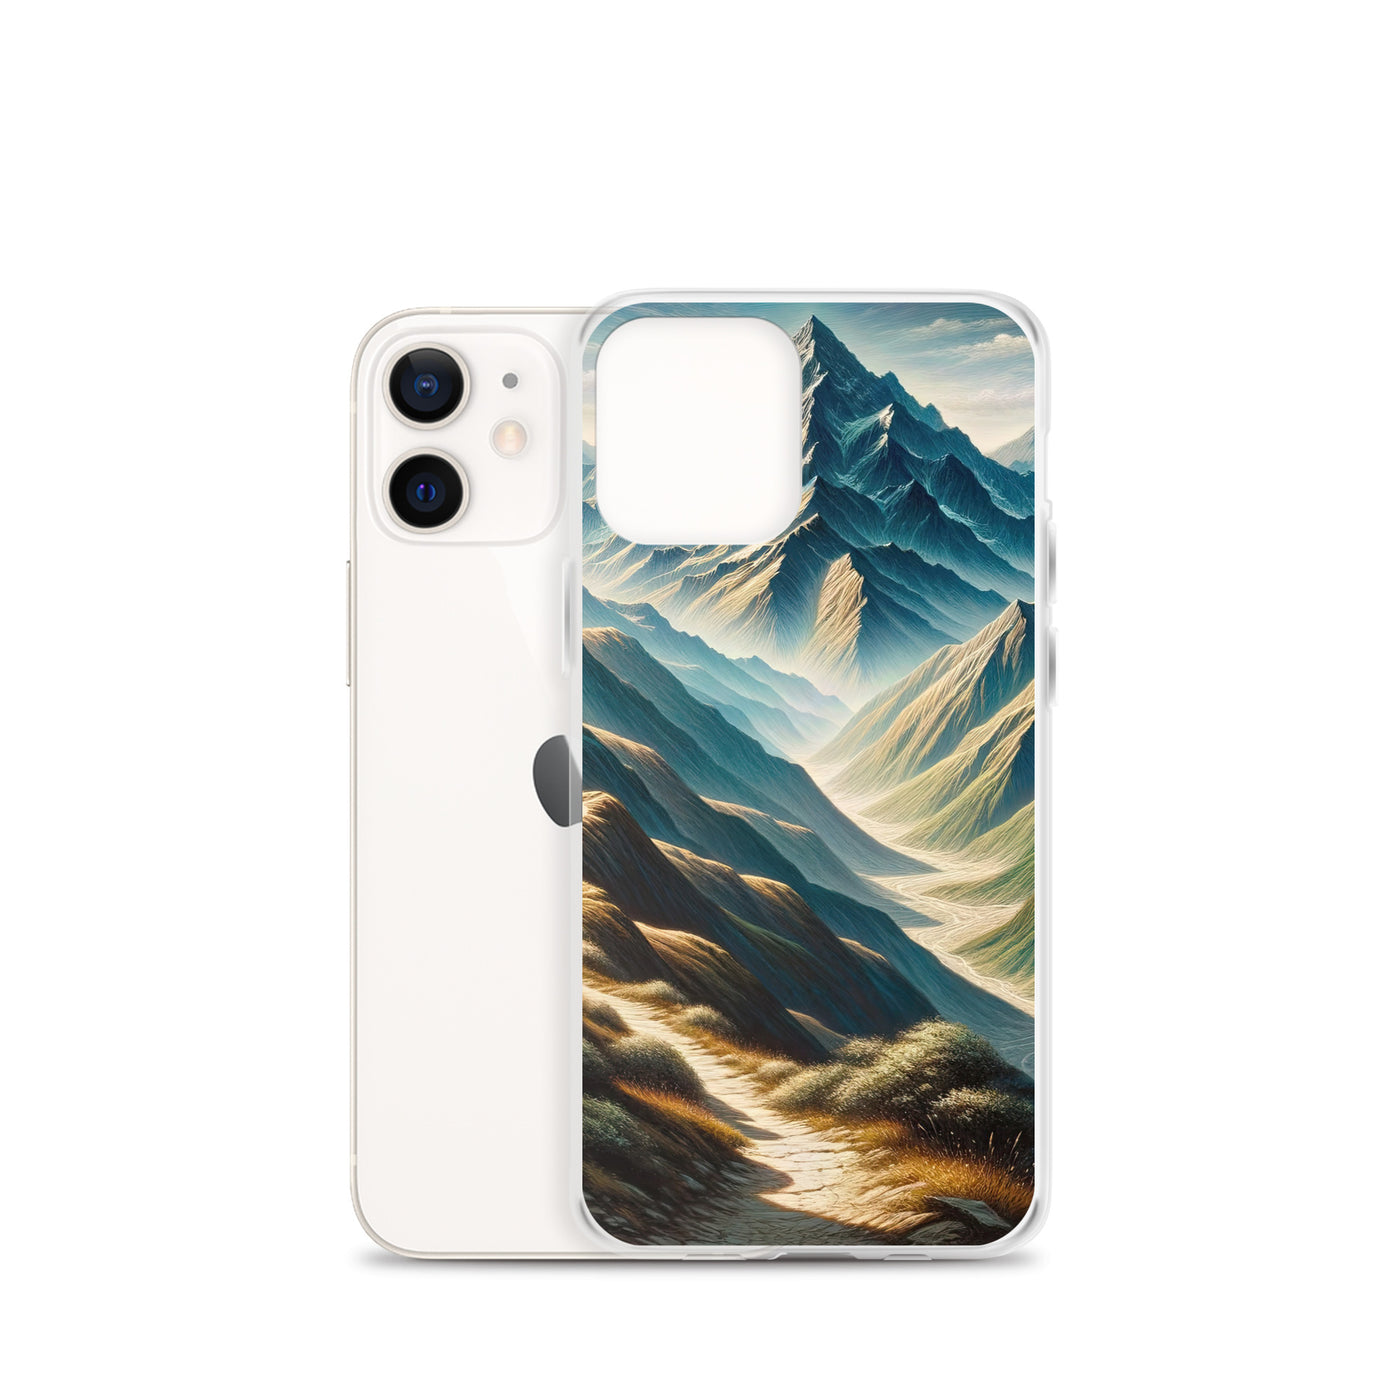 Berglandschaft: Acrylgemälde mit hervorgehobenem Pfad - iPhone Schutzhülle (durchsichtig) berge xxx yyy zzz